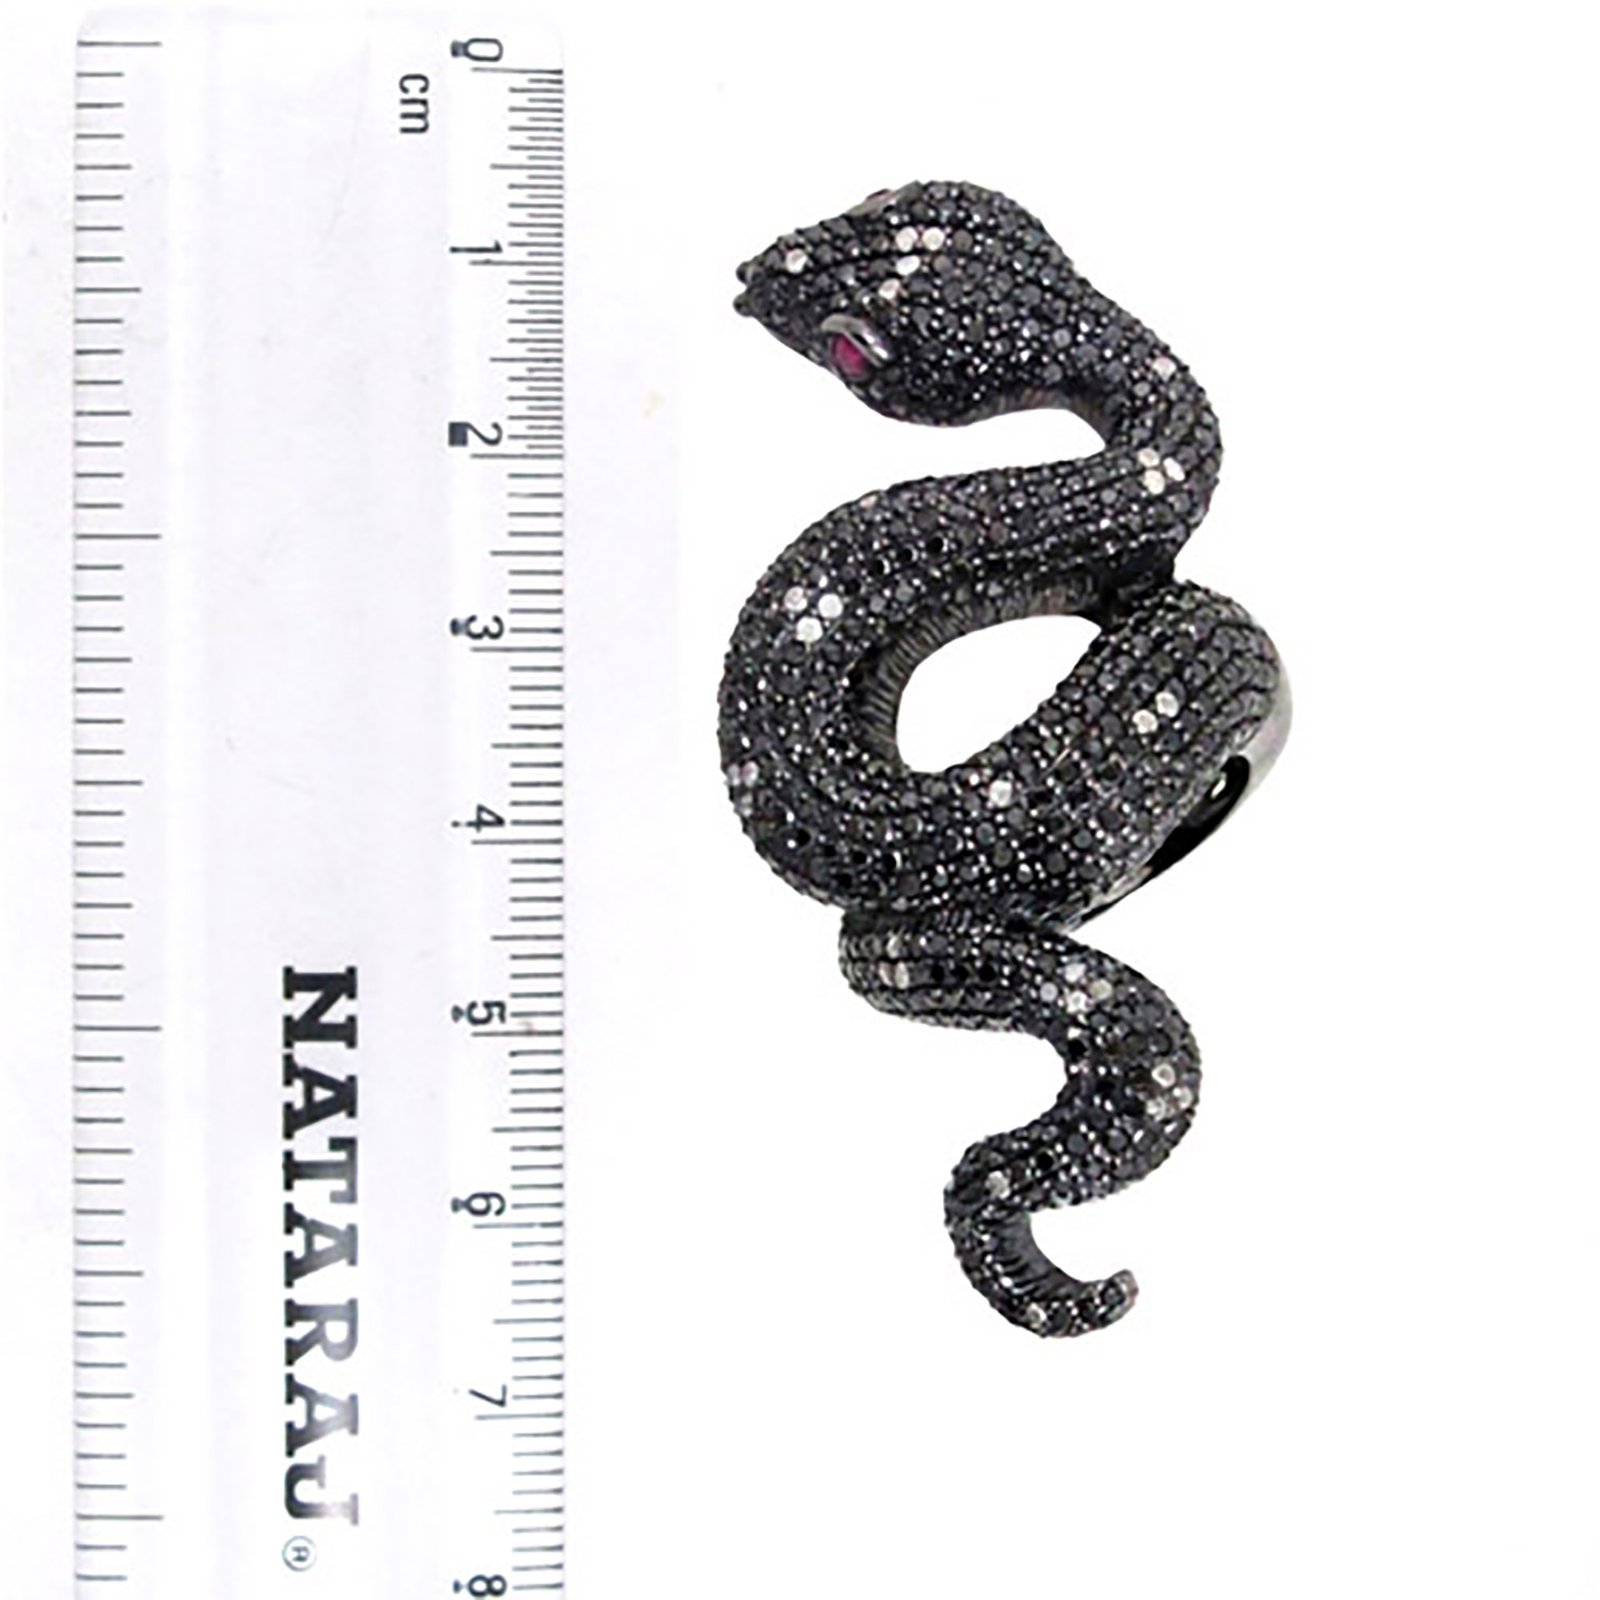 Black diamond snake ring vintage jewelry